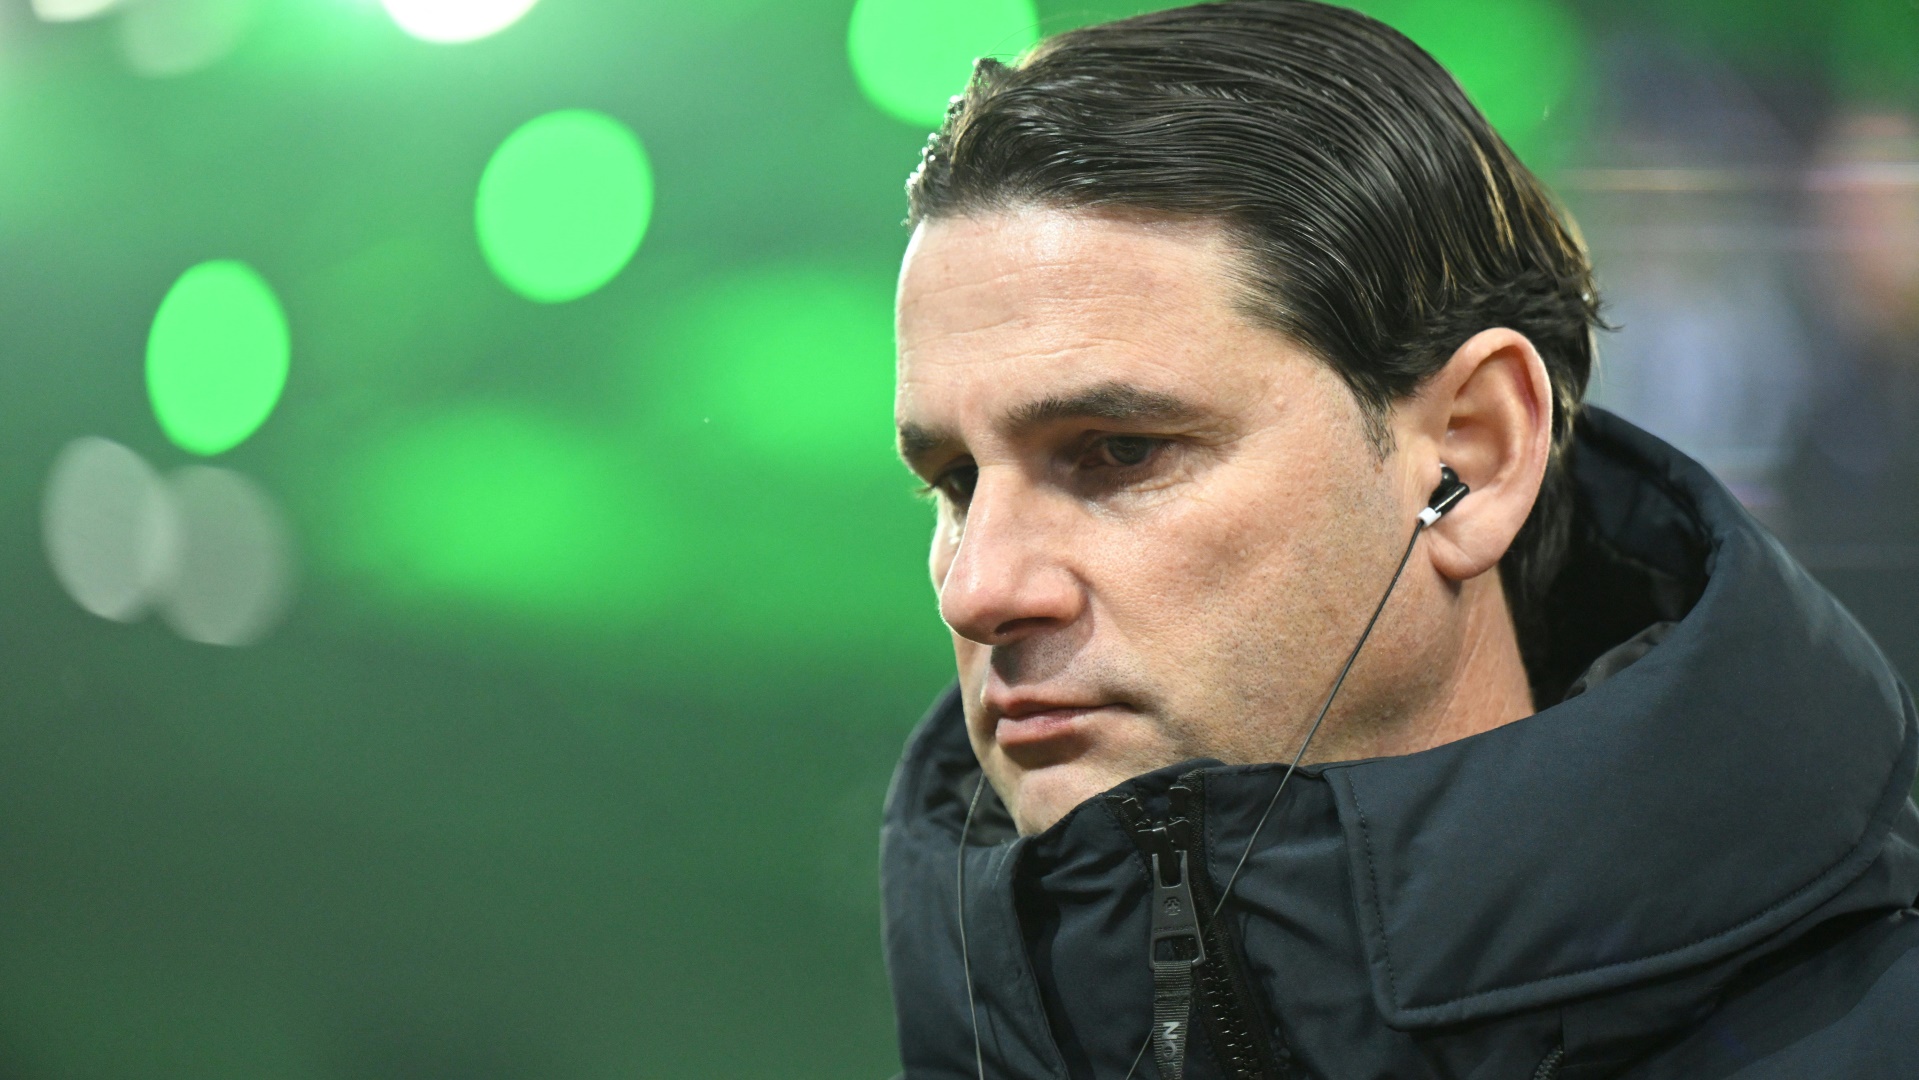 Gerardo Seoane ist seit einem Jahr Borussia-Trainer